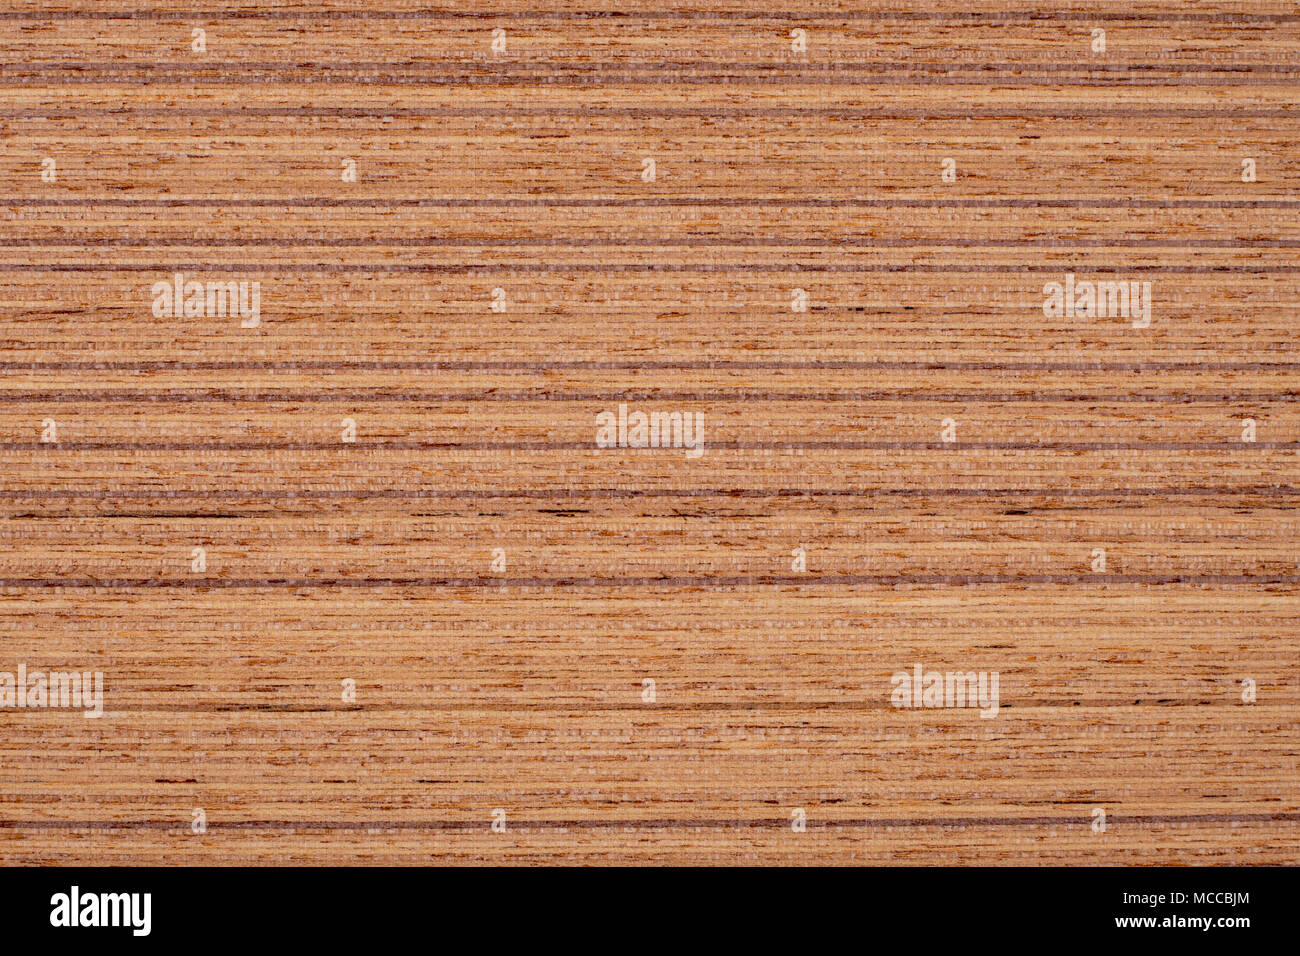 La texture de fond de bois de teck brun Banque D'Images